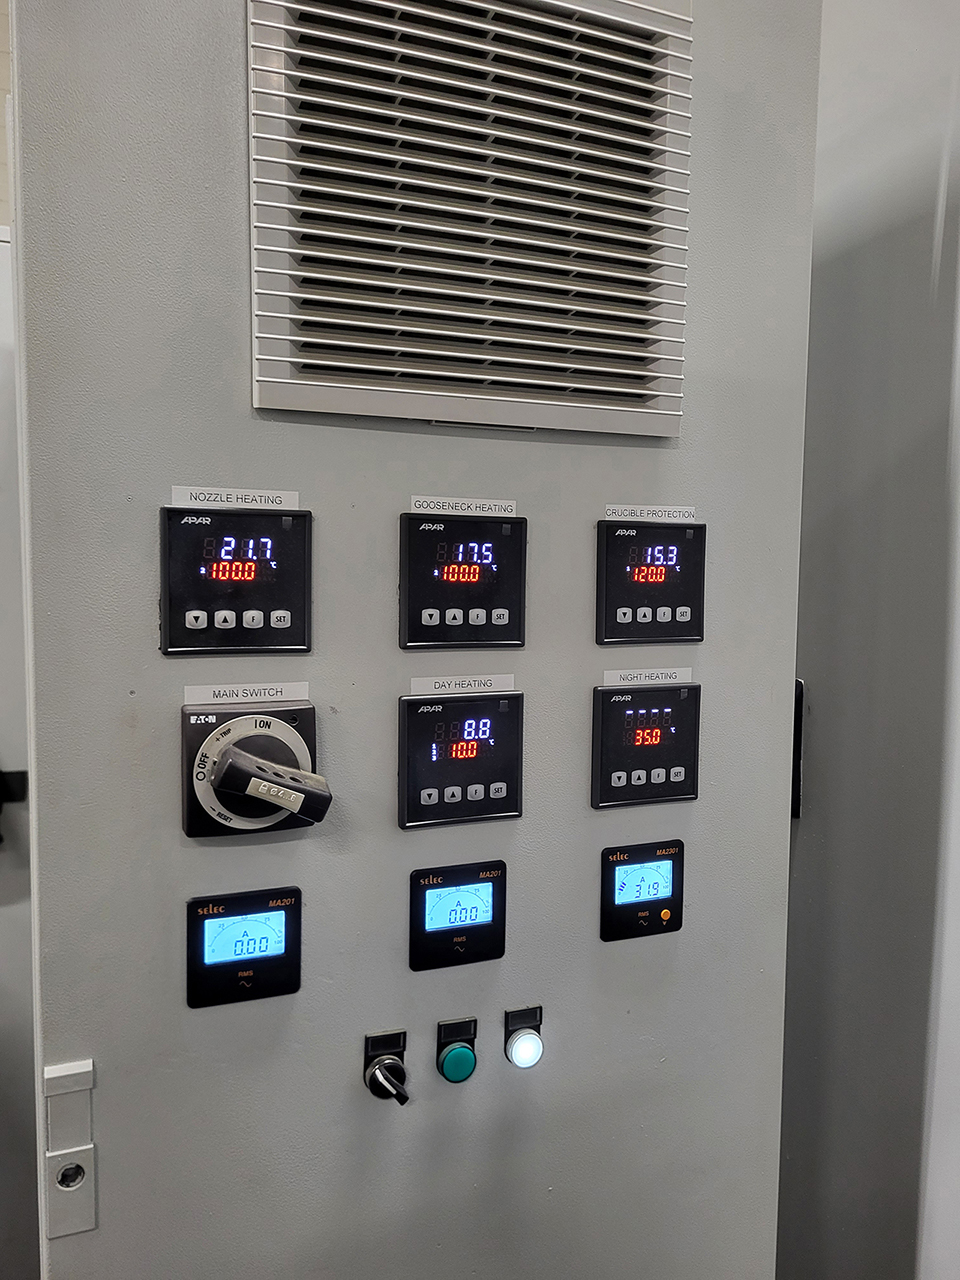 Frech DAW 125 F Warmkammer Druckgießmaschine WK1453, gebraucht